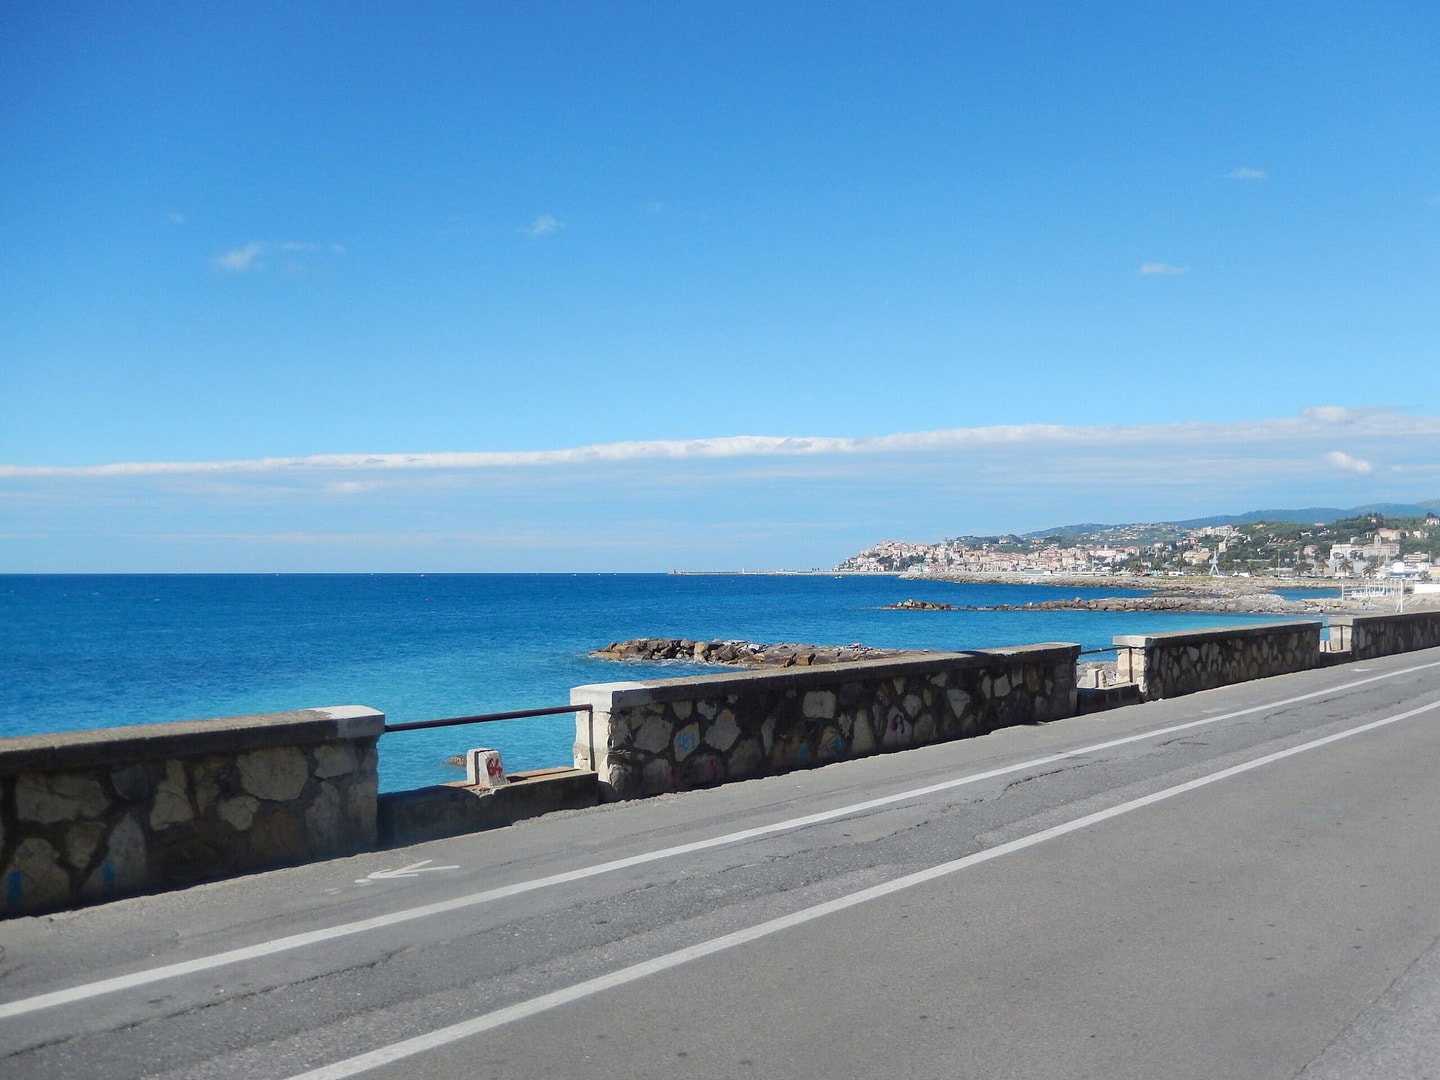 Radreise Italien Ligurien Blumenriviera, Blick von der Küstenstrasse über eine große Bucht Liguriens